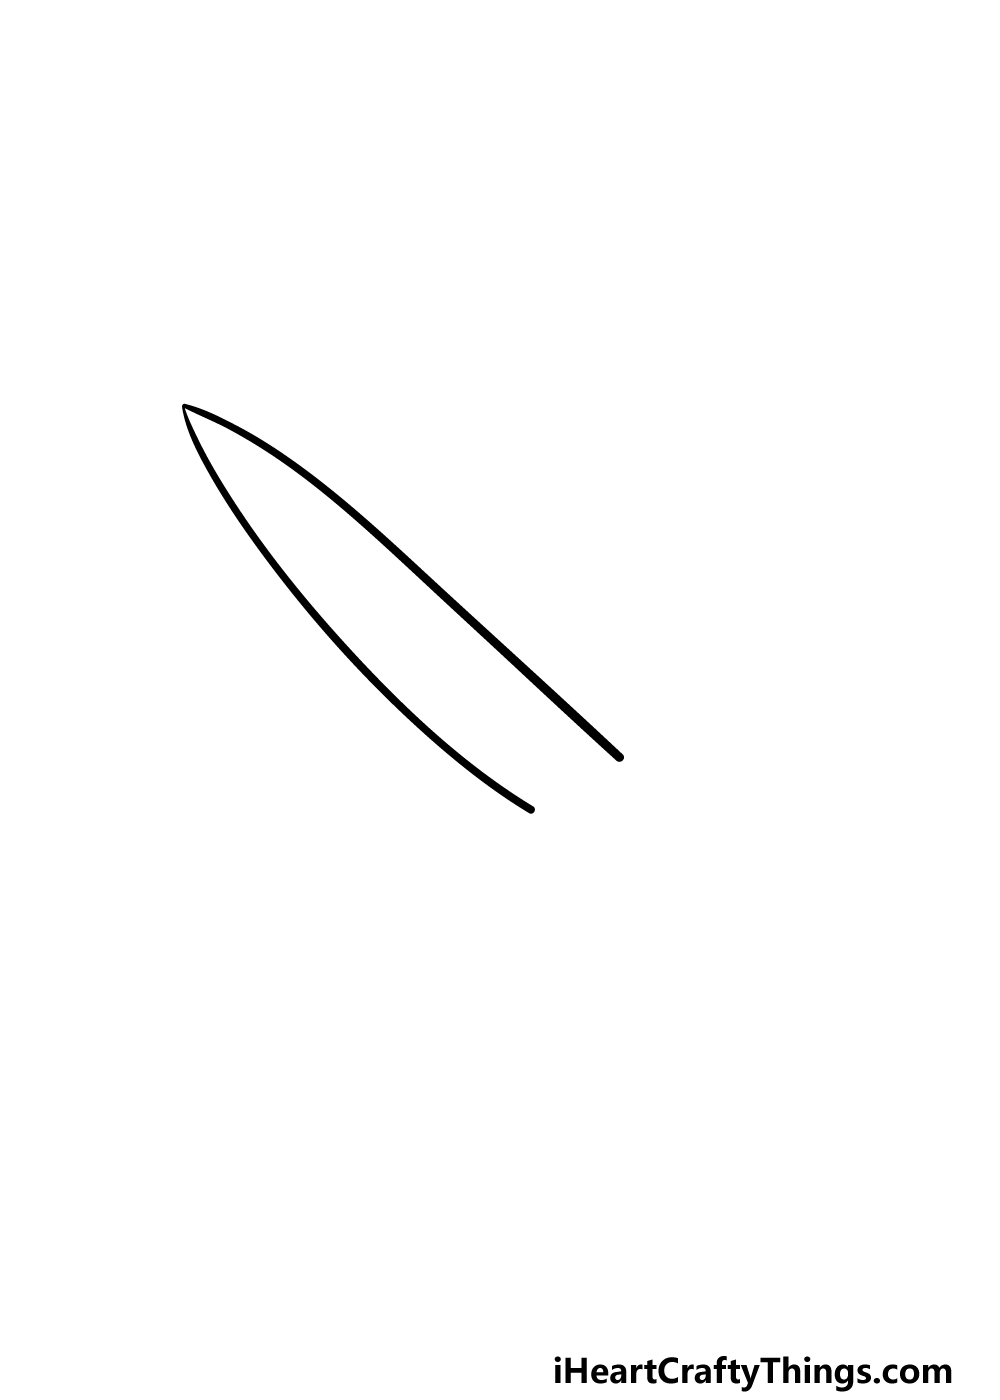 1 114 - Hướng dẫn cách vẽ con dao đơn giản với 6 bước cơ bản